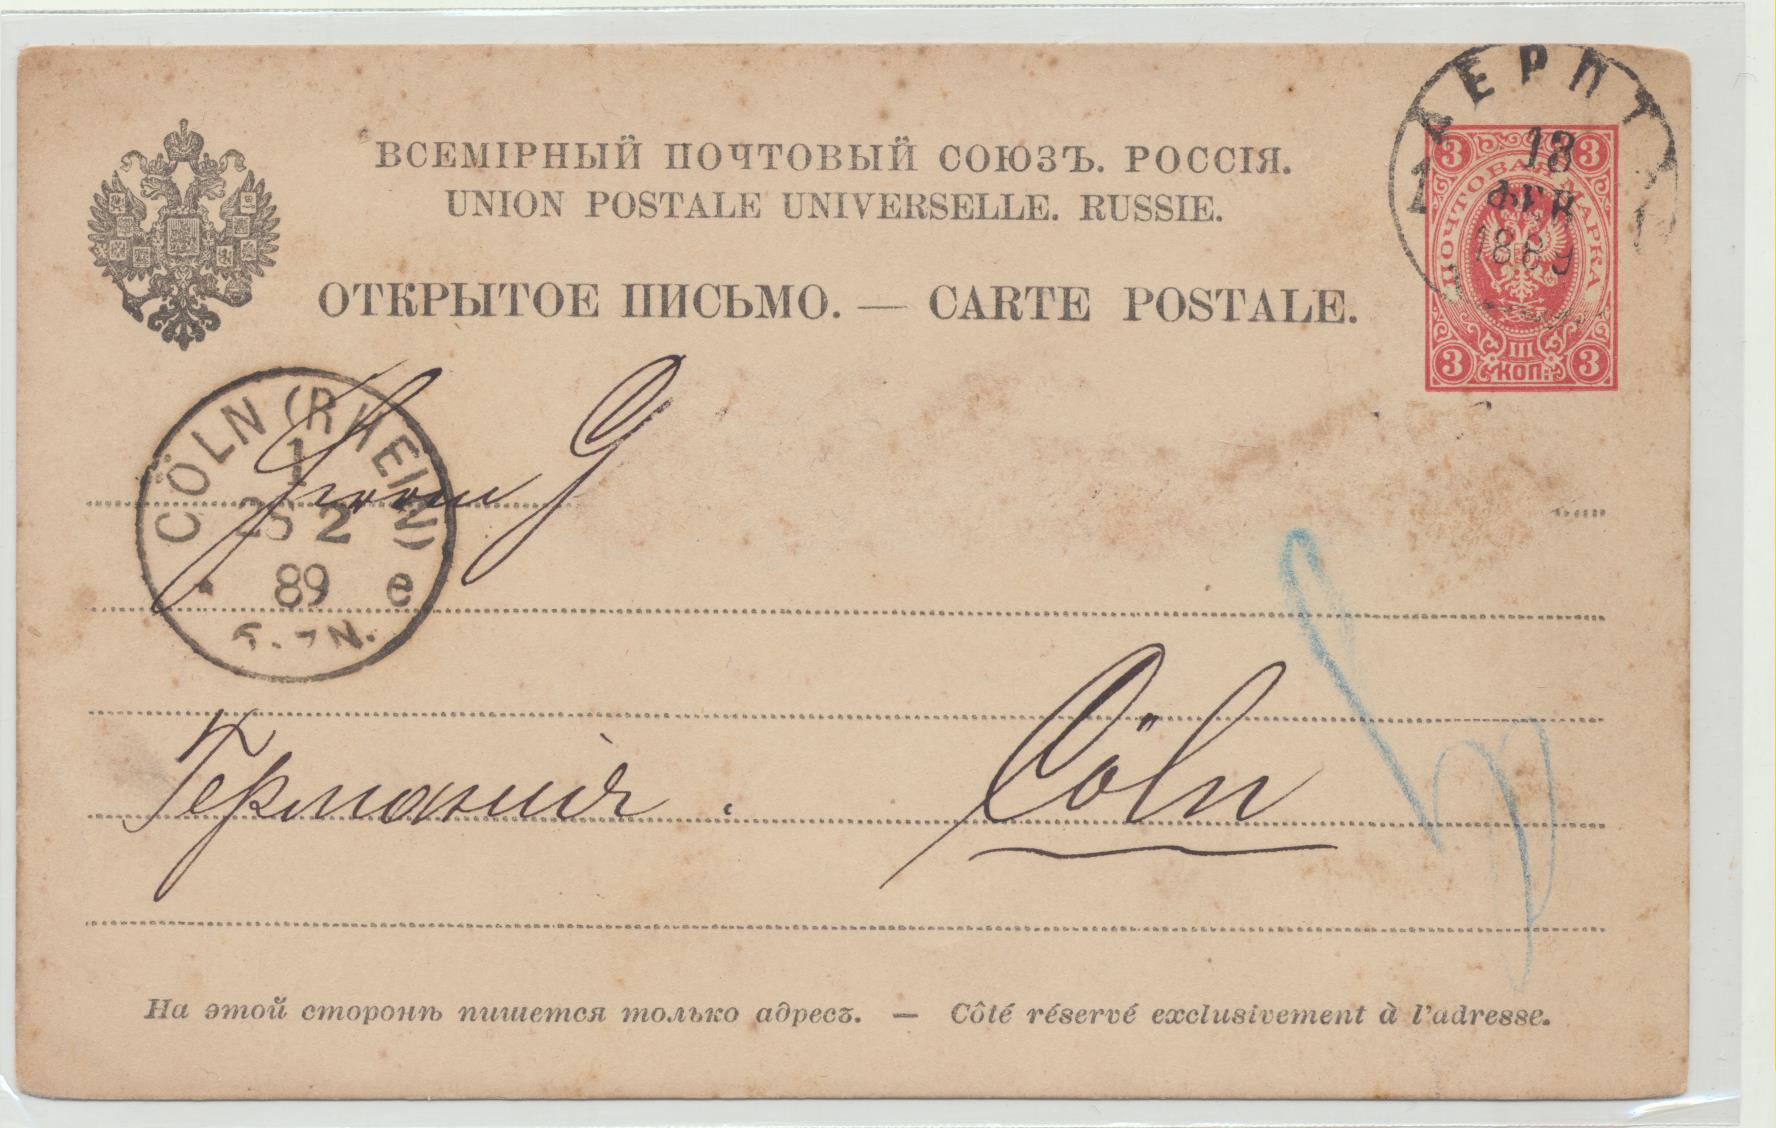 Rusia. Entero Postal. Fechado el 13-2-1889. A Colonia. Con fechador de llegada